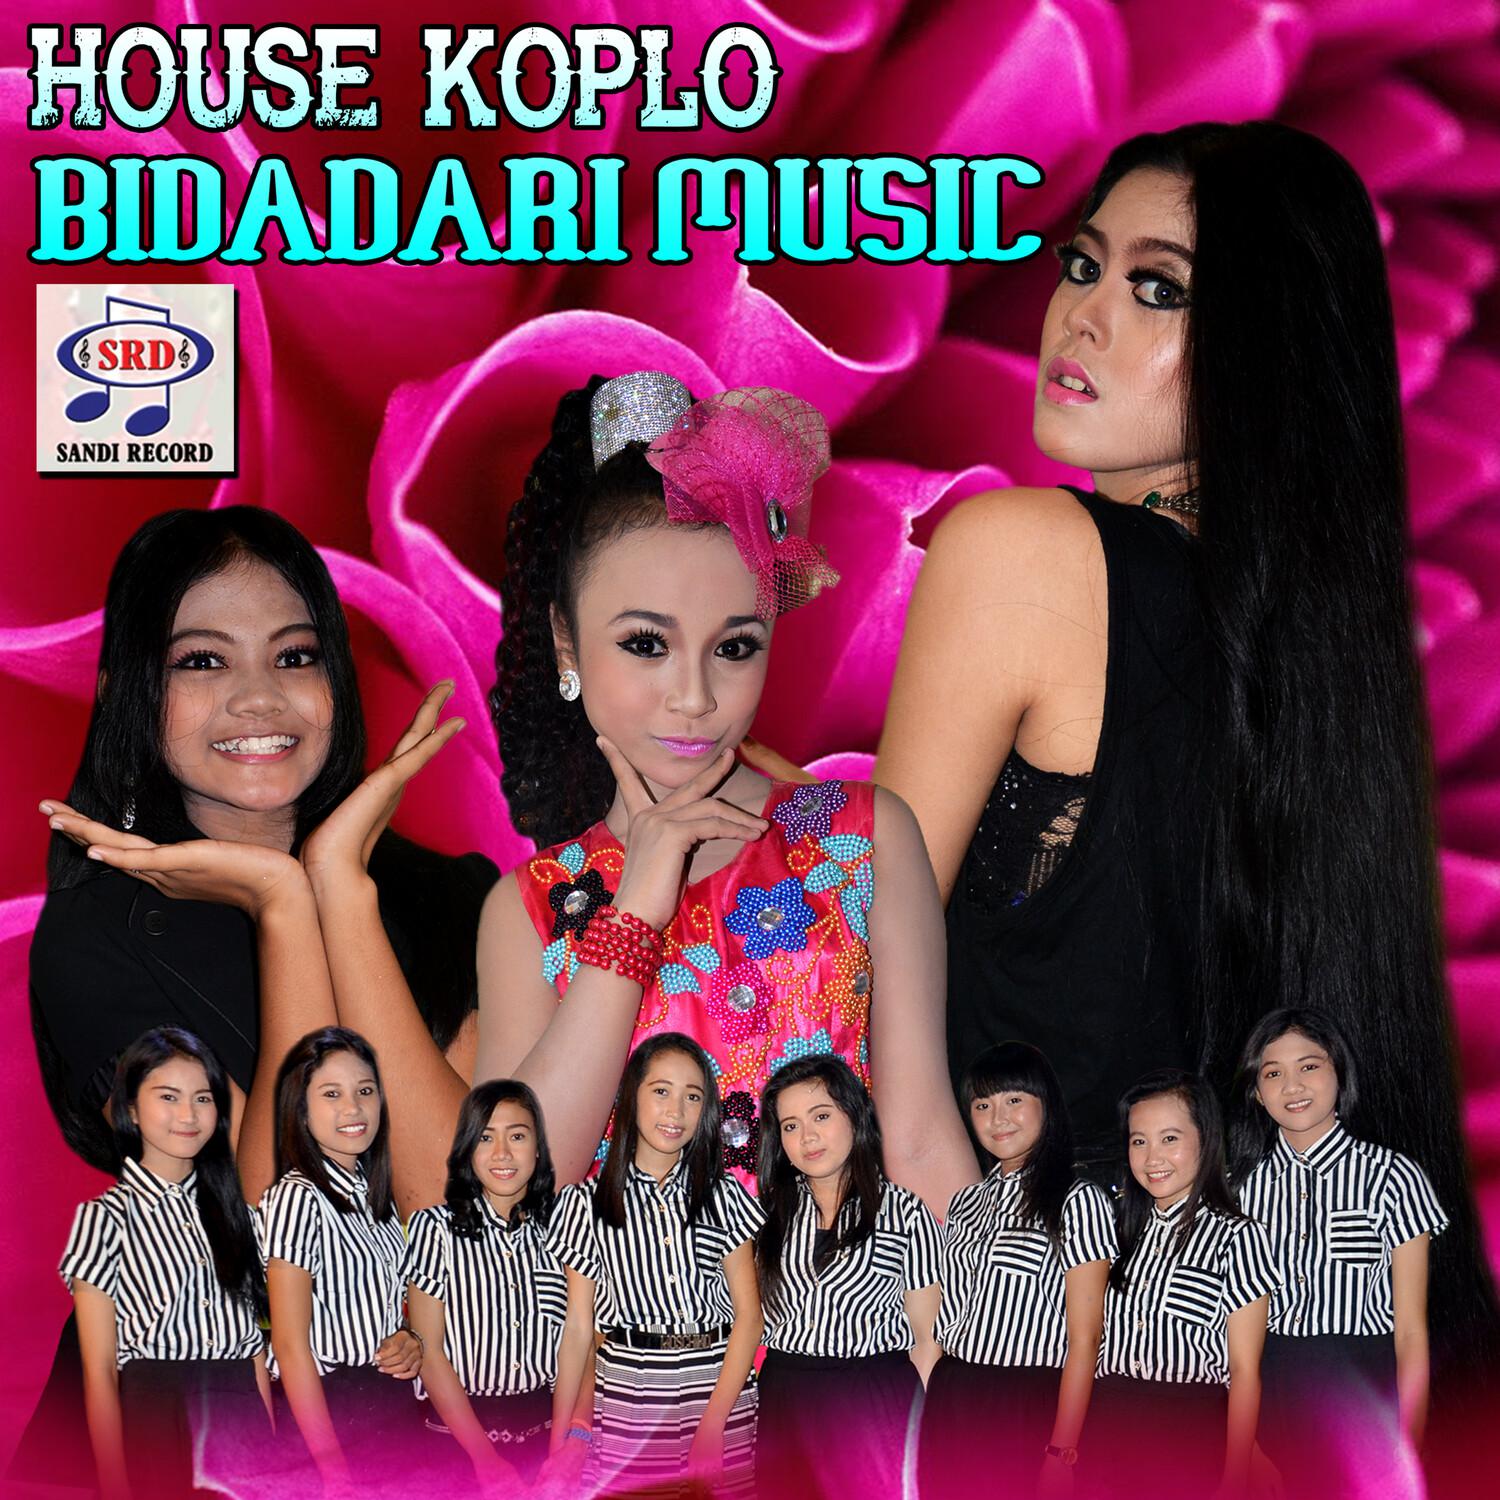 House Koplo Bidadari Music